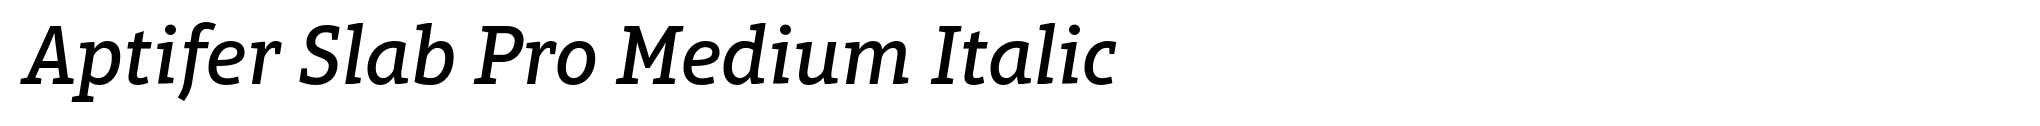 Aptifer Slab Pro Medium Italic image